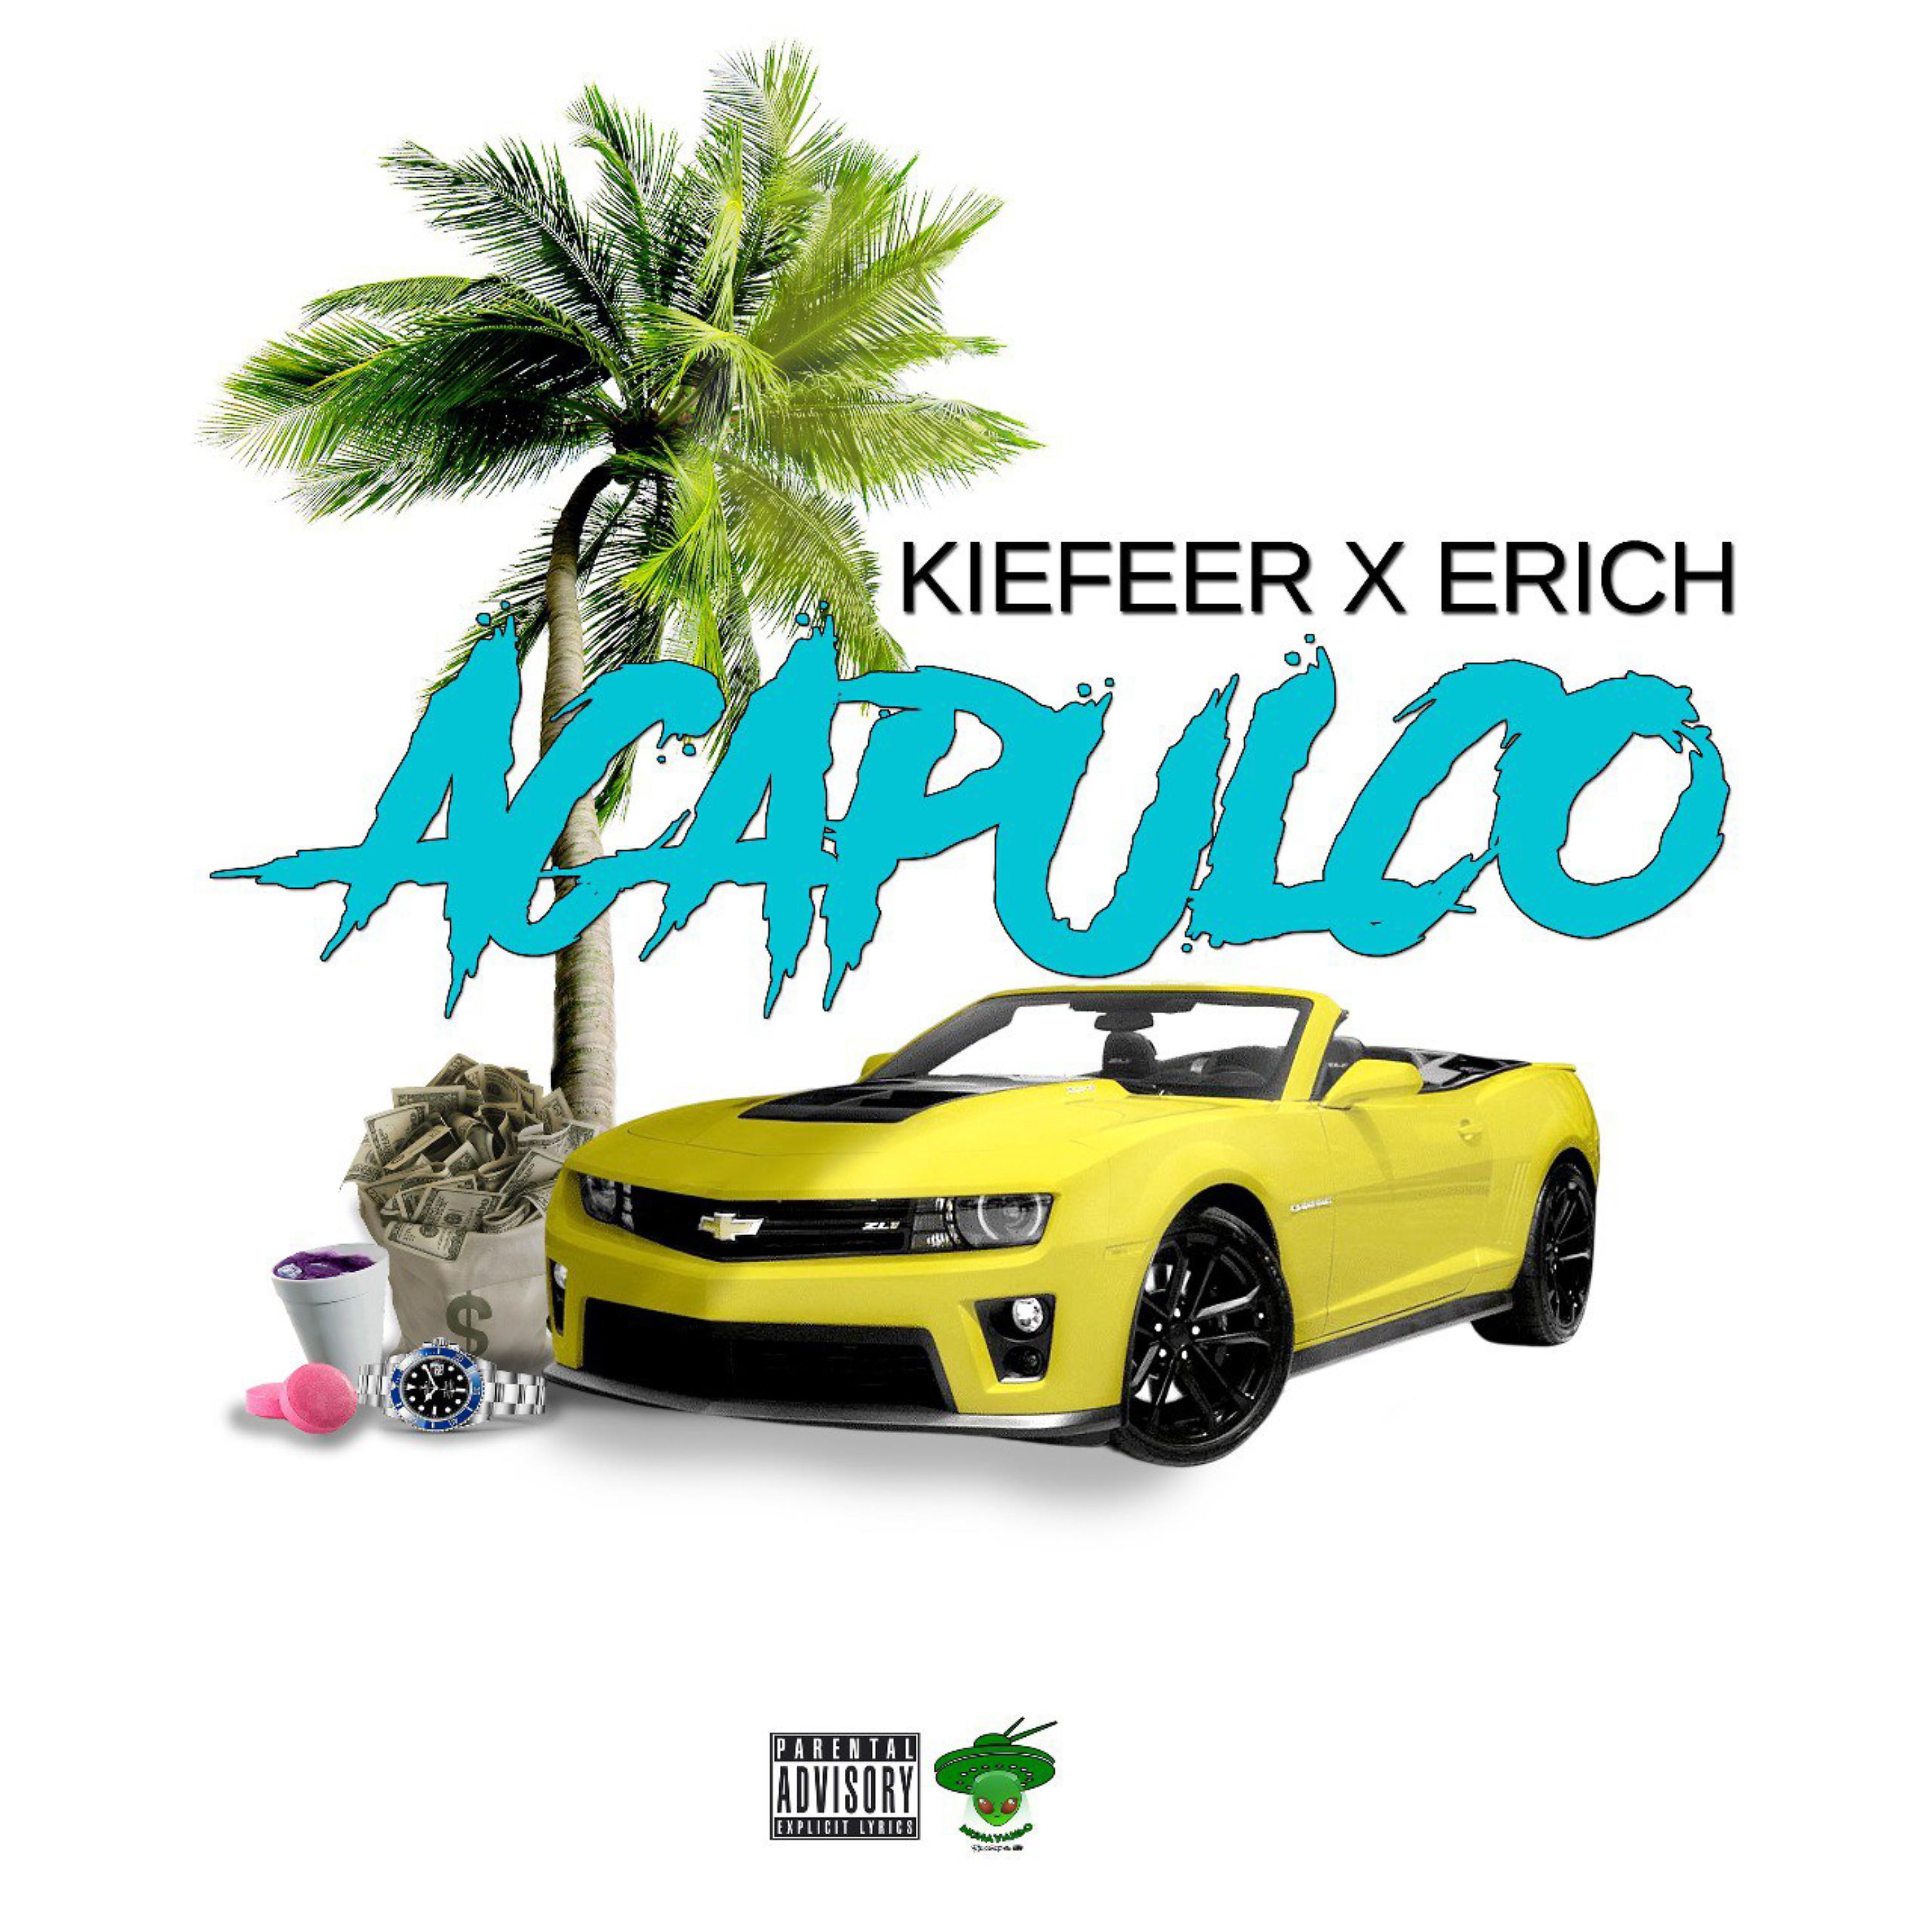 Постер альбома Acapulco